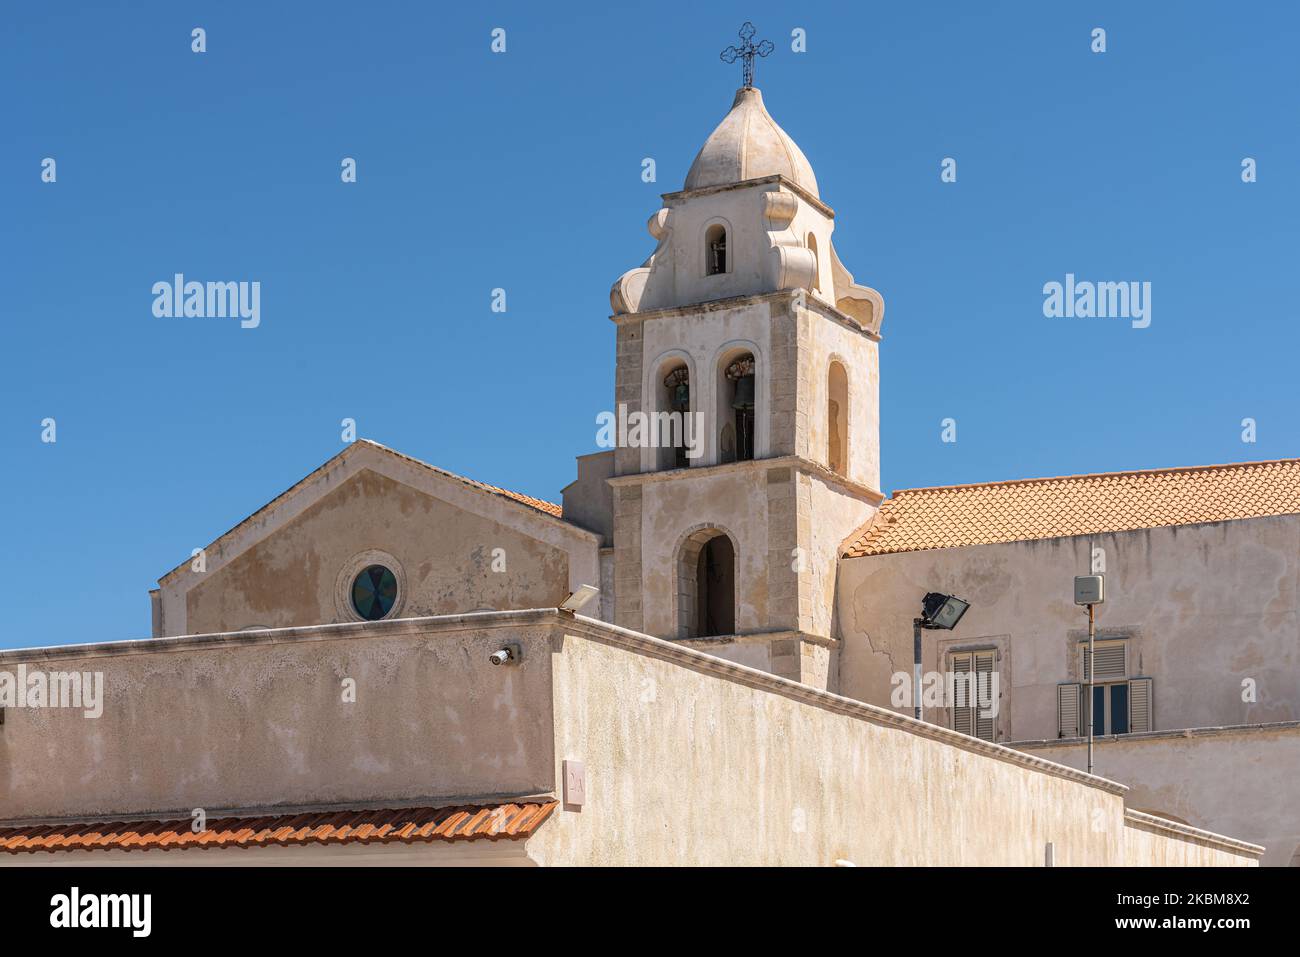 Die Kirche von S. Francesco befindet sich im historischen Zentrum auf einem felsigen Punkt im östlichsten Teil von Vieste. Vieste, Provinz Foggia, Apulien, Italien Stockfoto